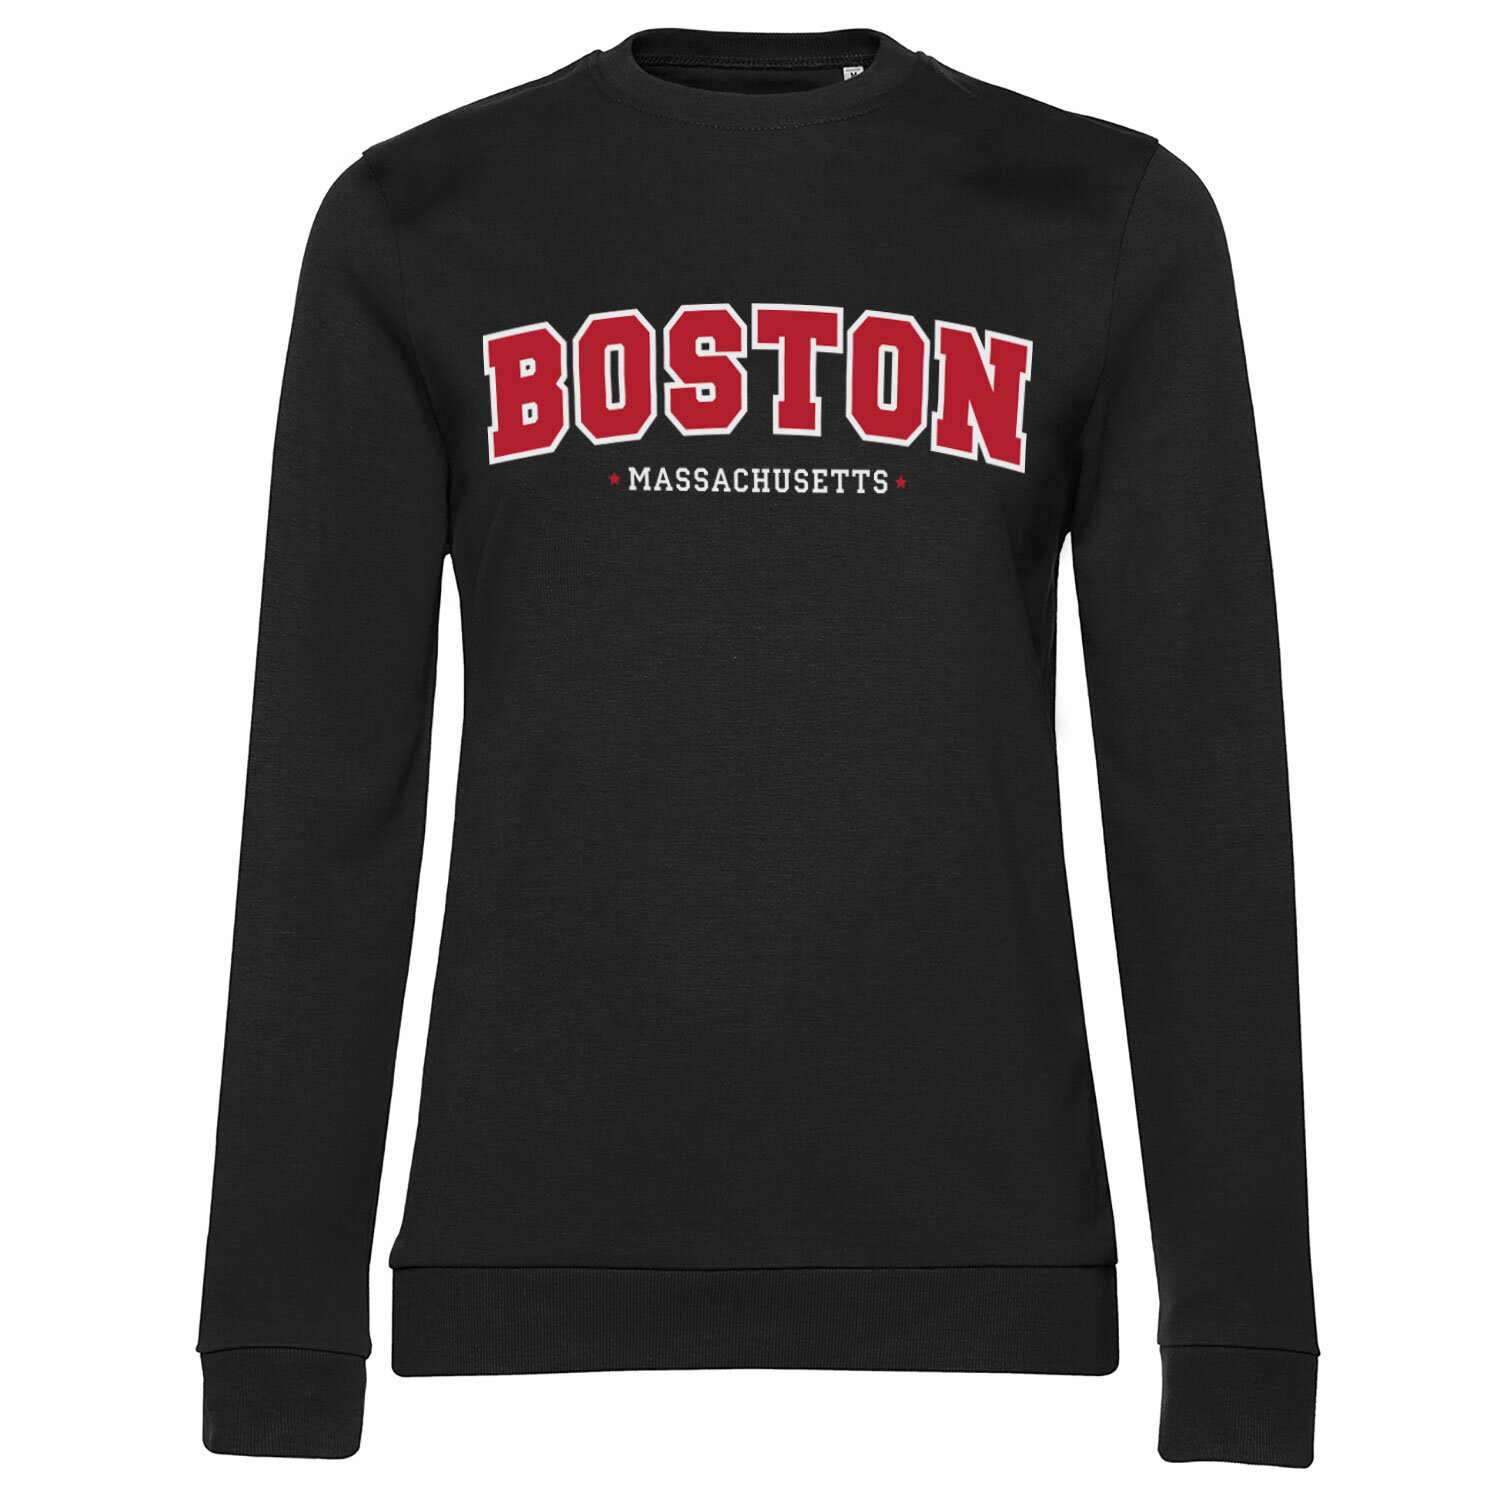 Boston - Massachusetts Girly Sweatshirt